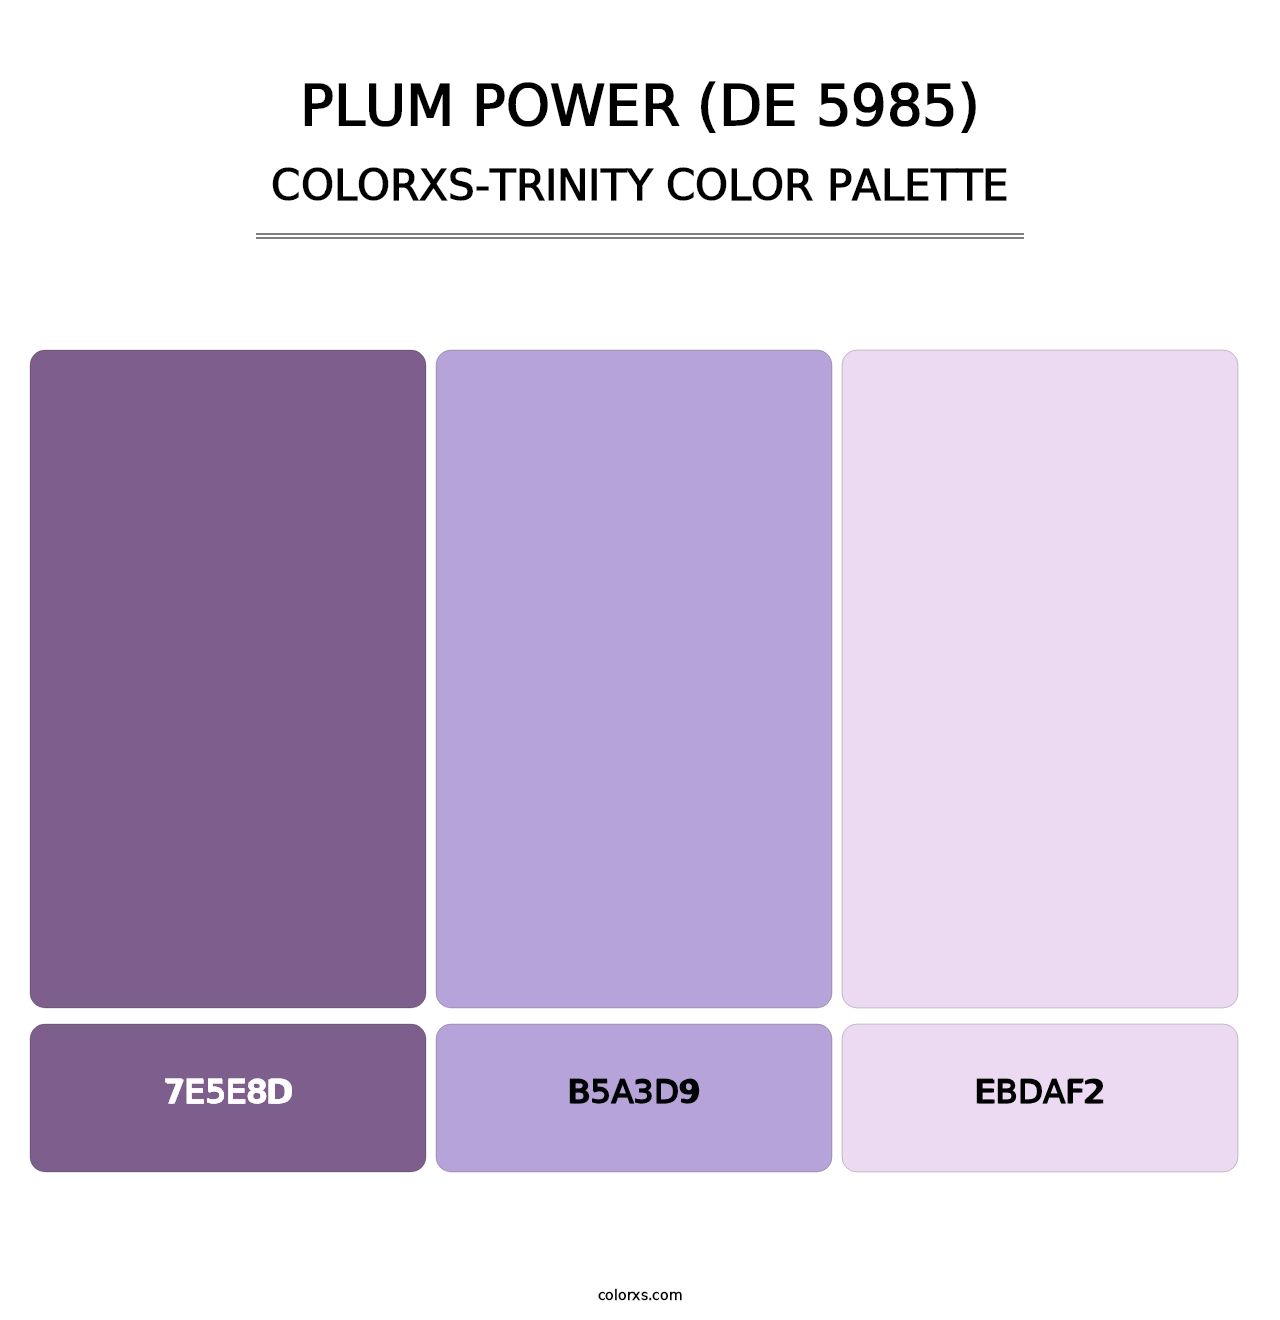 Plum Power (DE 5985) - Colorxs Trinity Palette